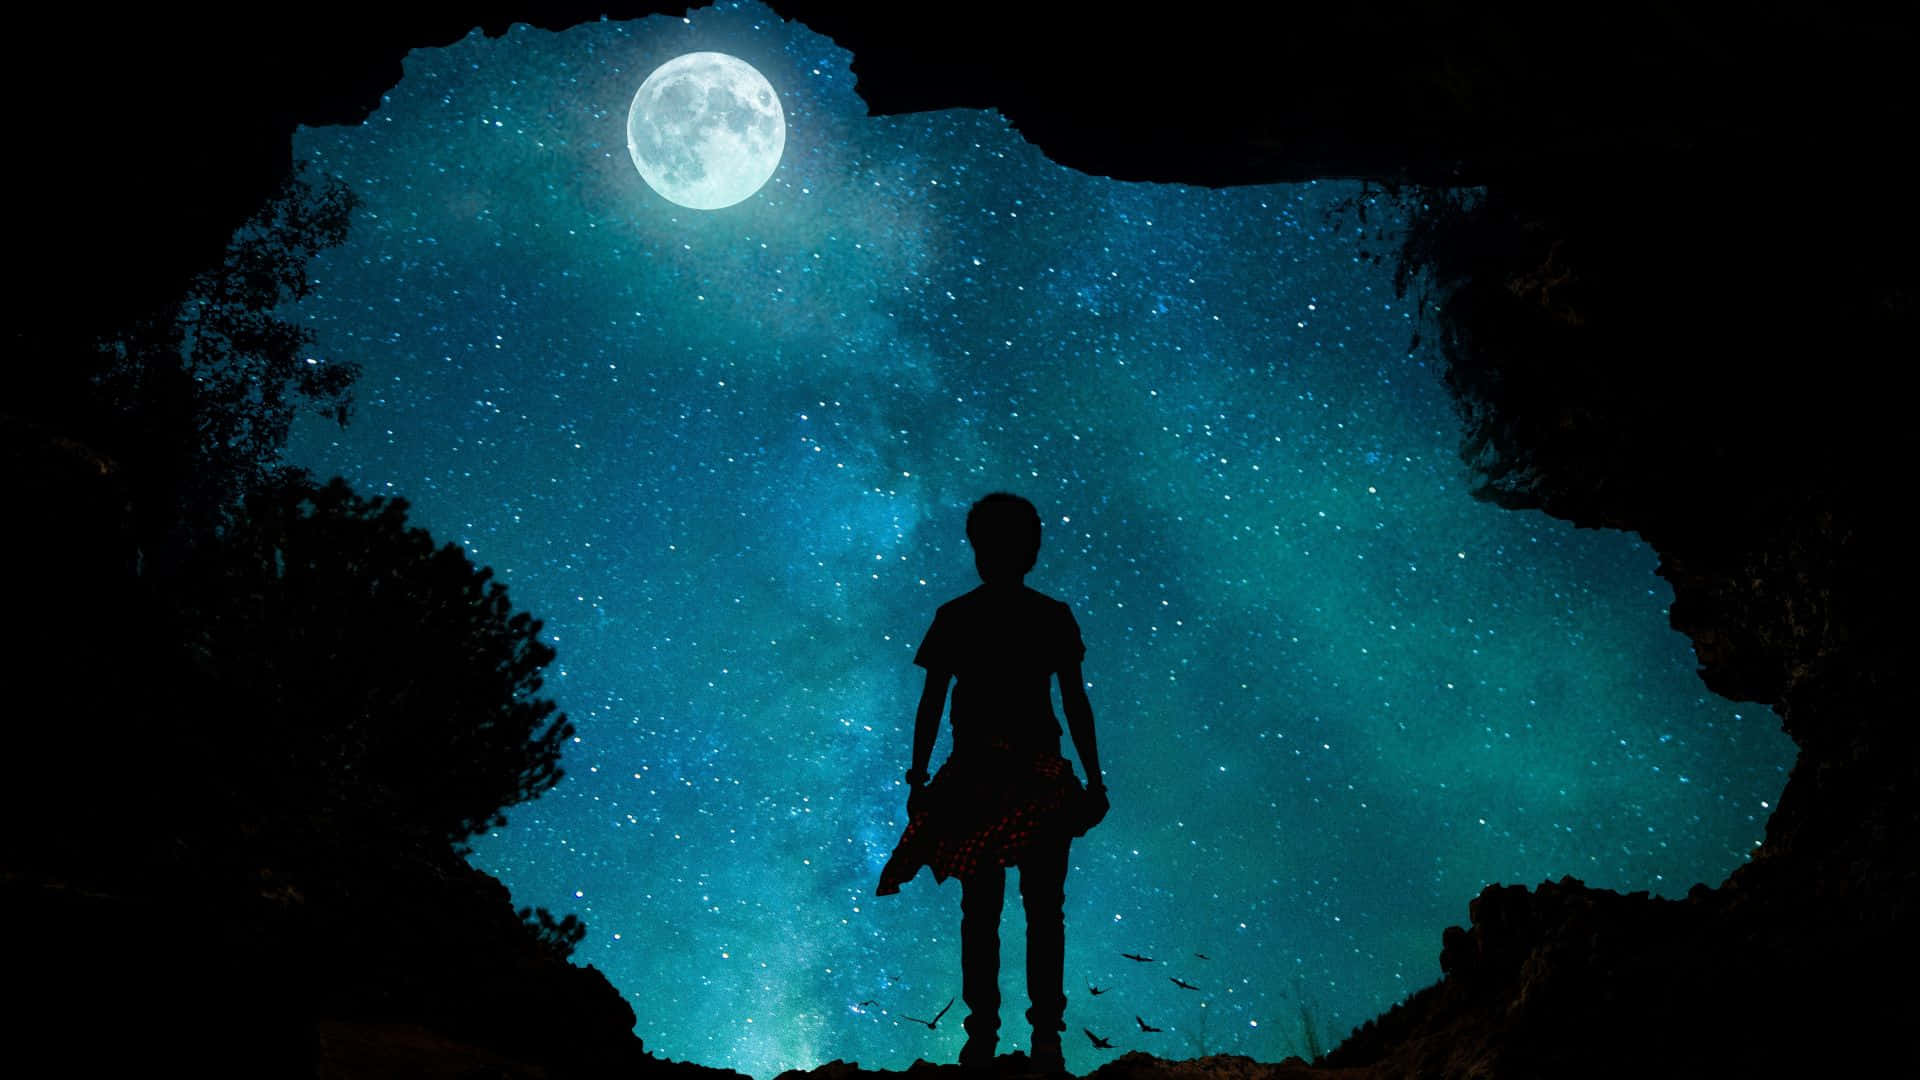 Ritrattodi Ragazza In Silhouette Di Fronte A Un'immagine Di Una Luna Sullo Sfondo Del Cielo Notturno Blu.